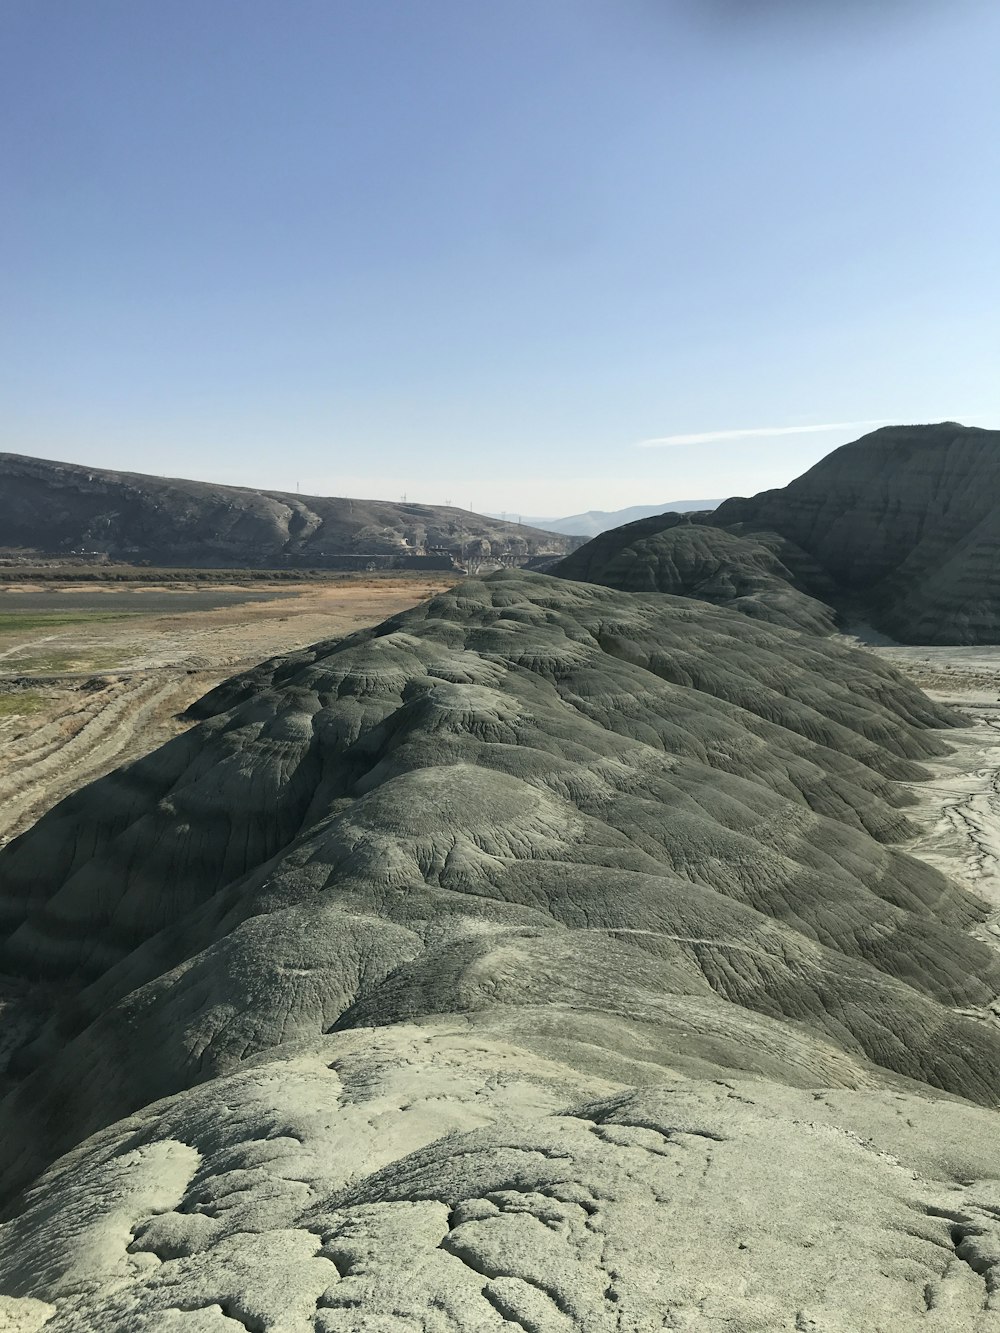 a large rocky landscape